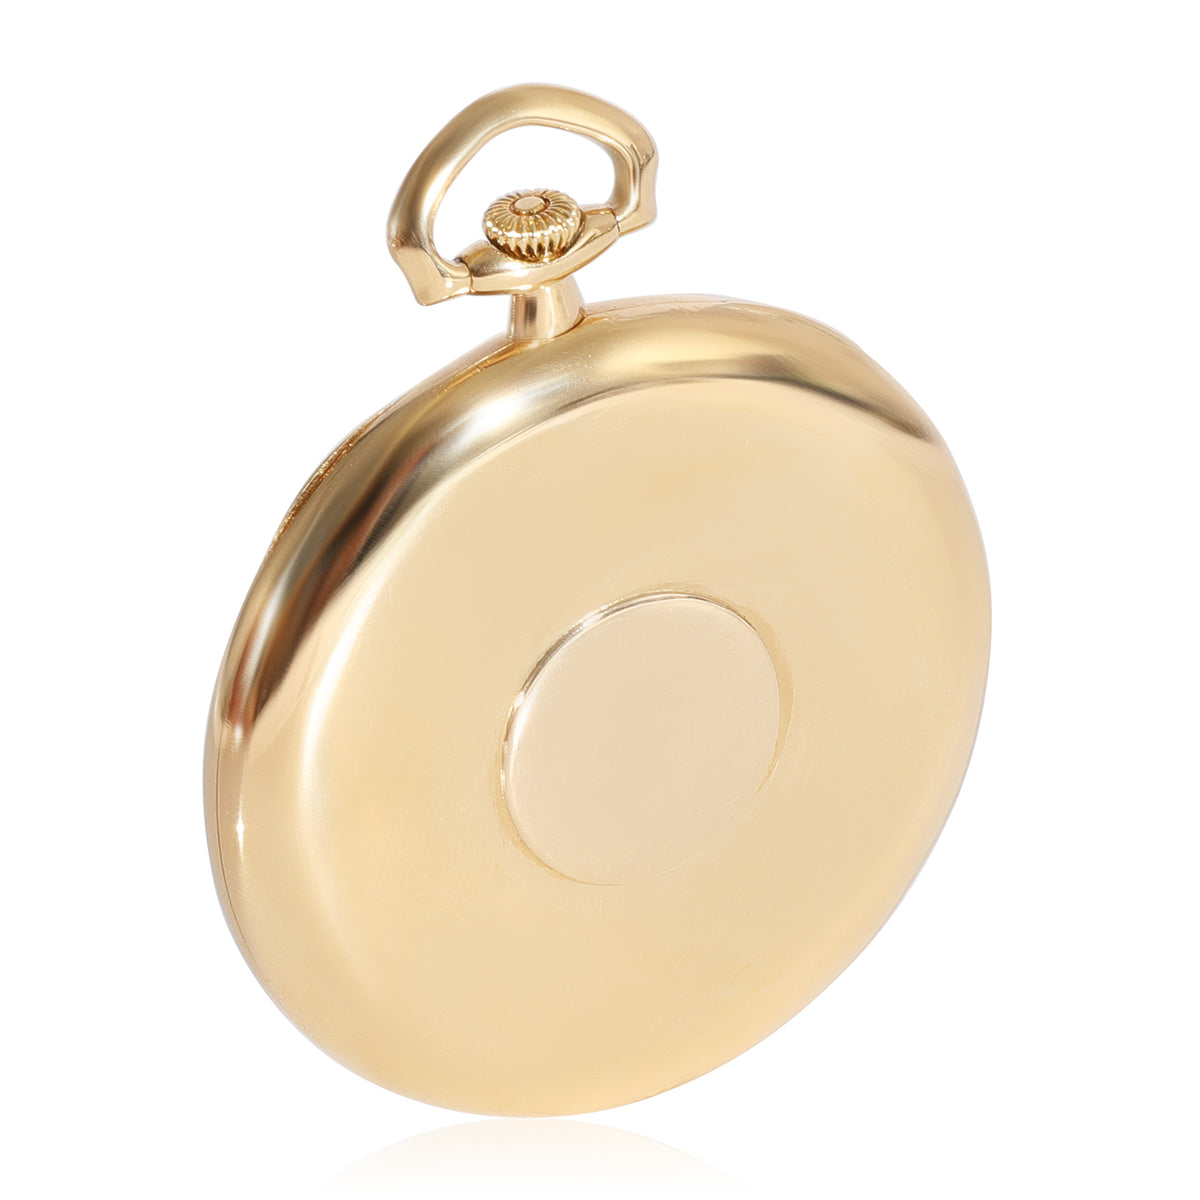 Vacheron Constantin Pocket Watch 212465 Men's Watch in 18kt Yellow Gold